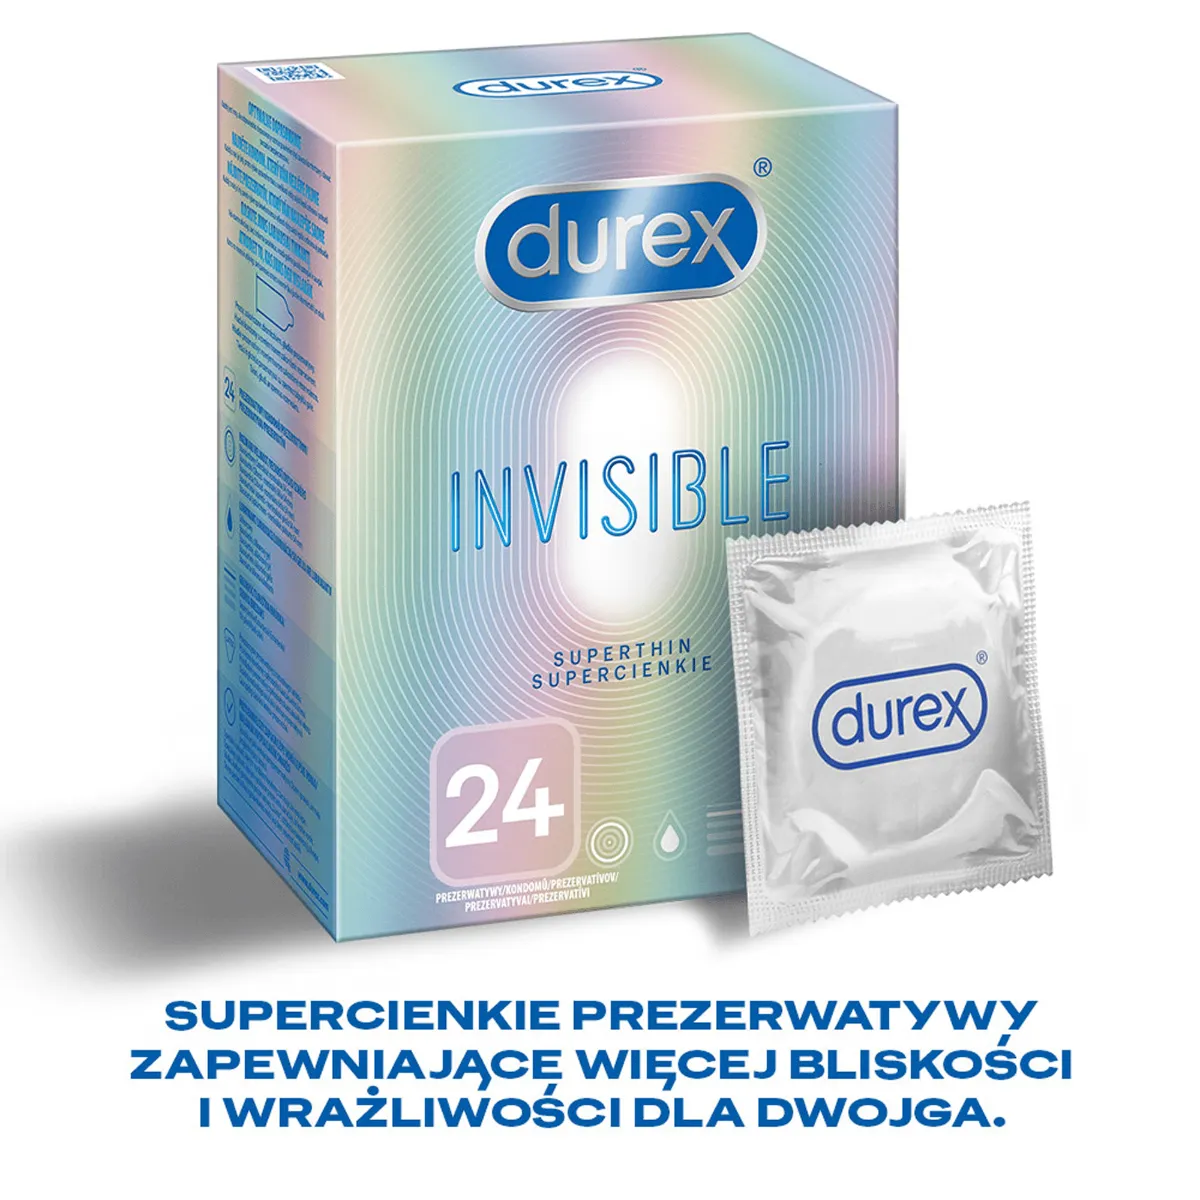 Durex Invisible, prezerwatywy, dla większej bliskości, 24 sztuki 